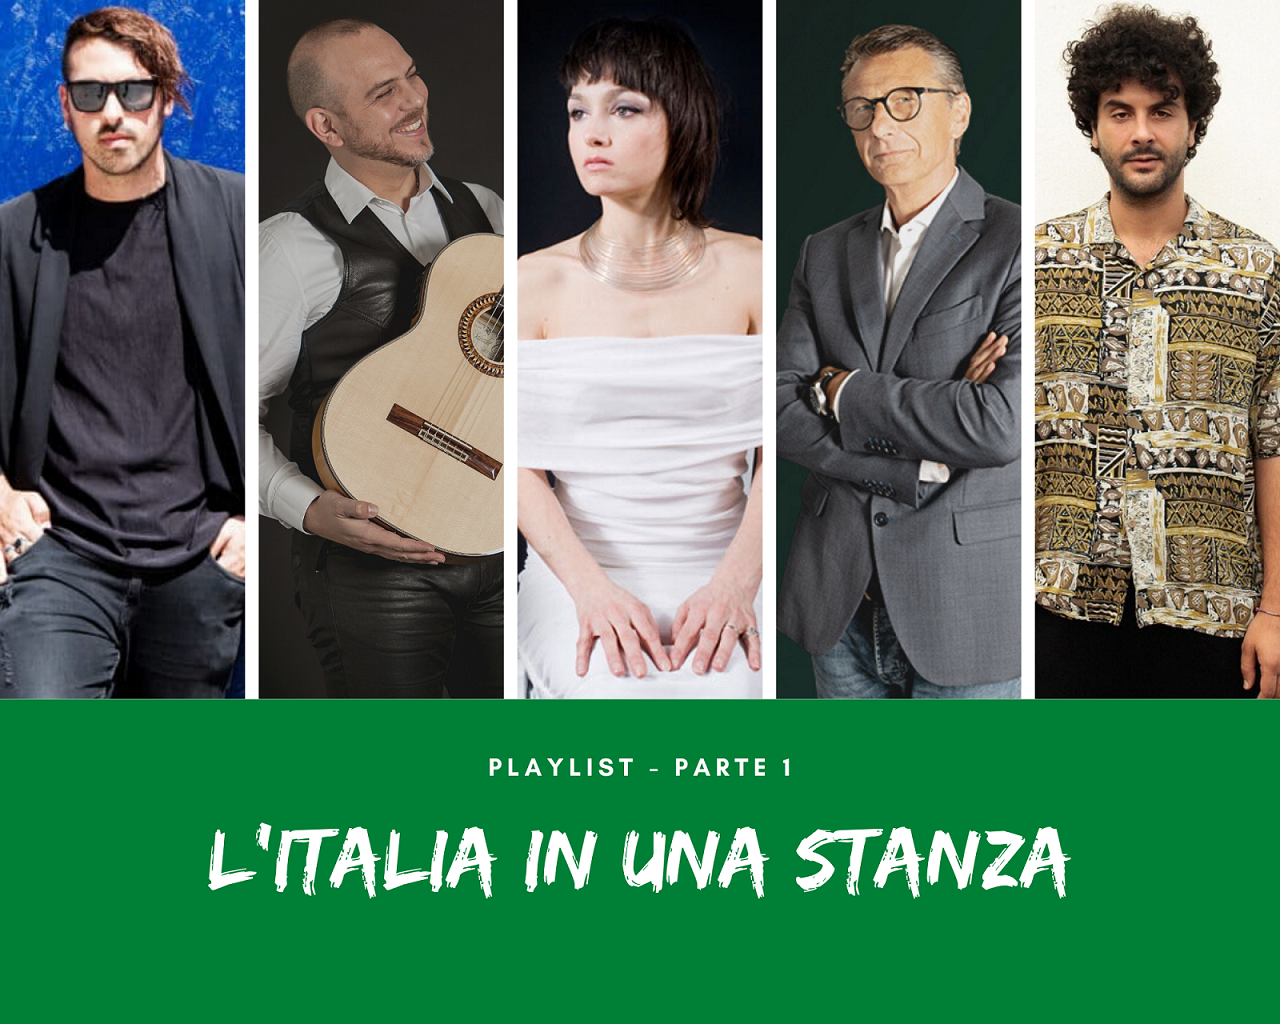 L'ITALIA IN UNA STANZA - PLAYLIST PARTE 1 - La Municipàl, Andrea Dessì, Petra Magoni, Gegè Telesforo, Blumosso